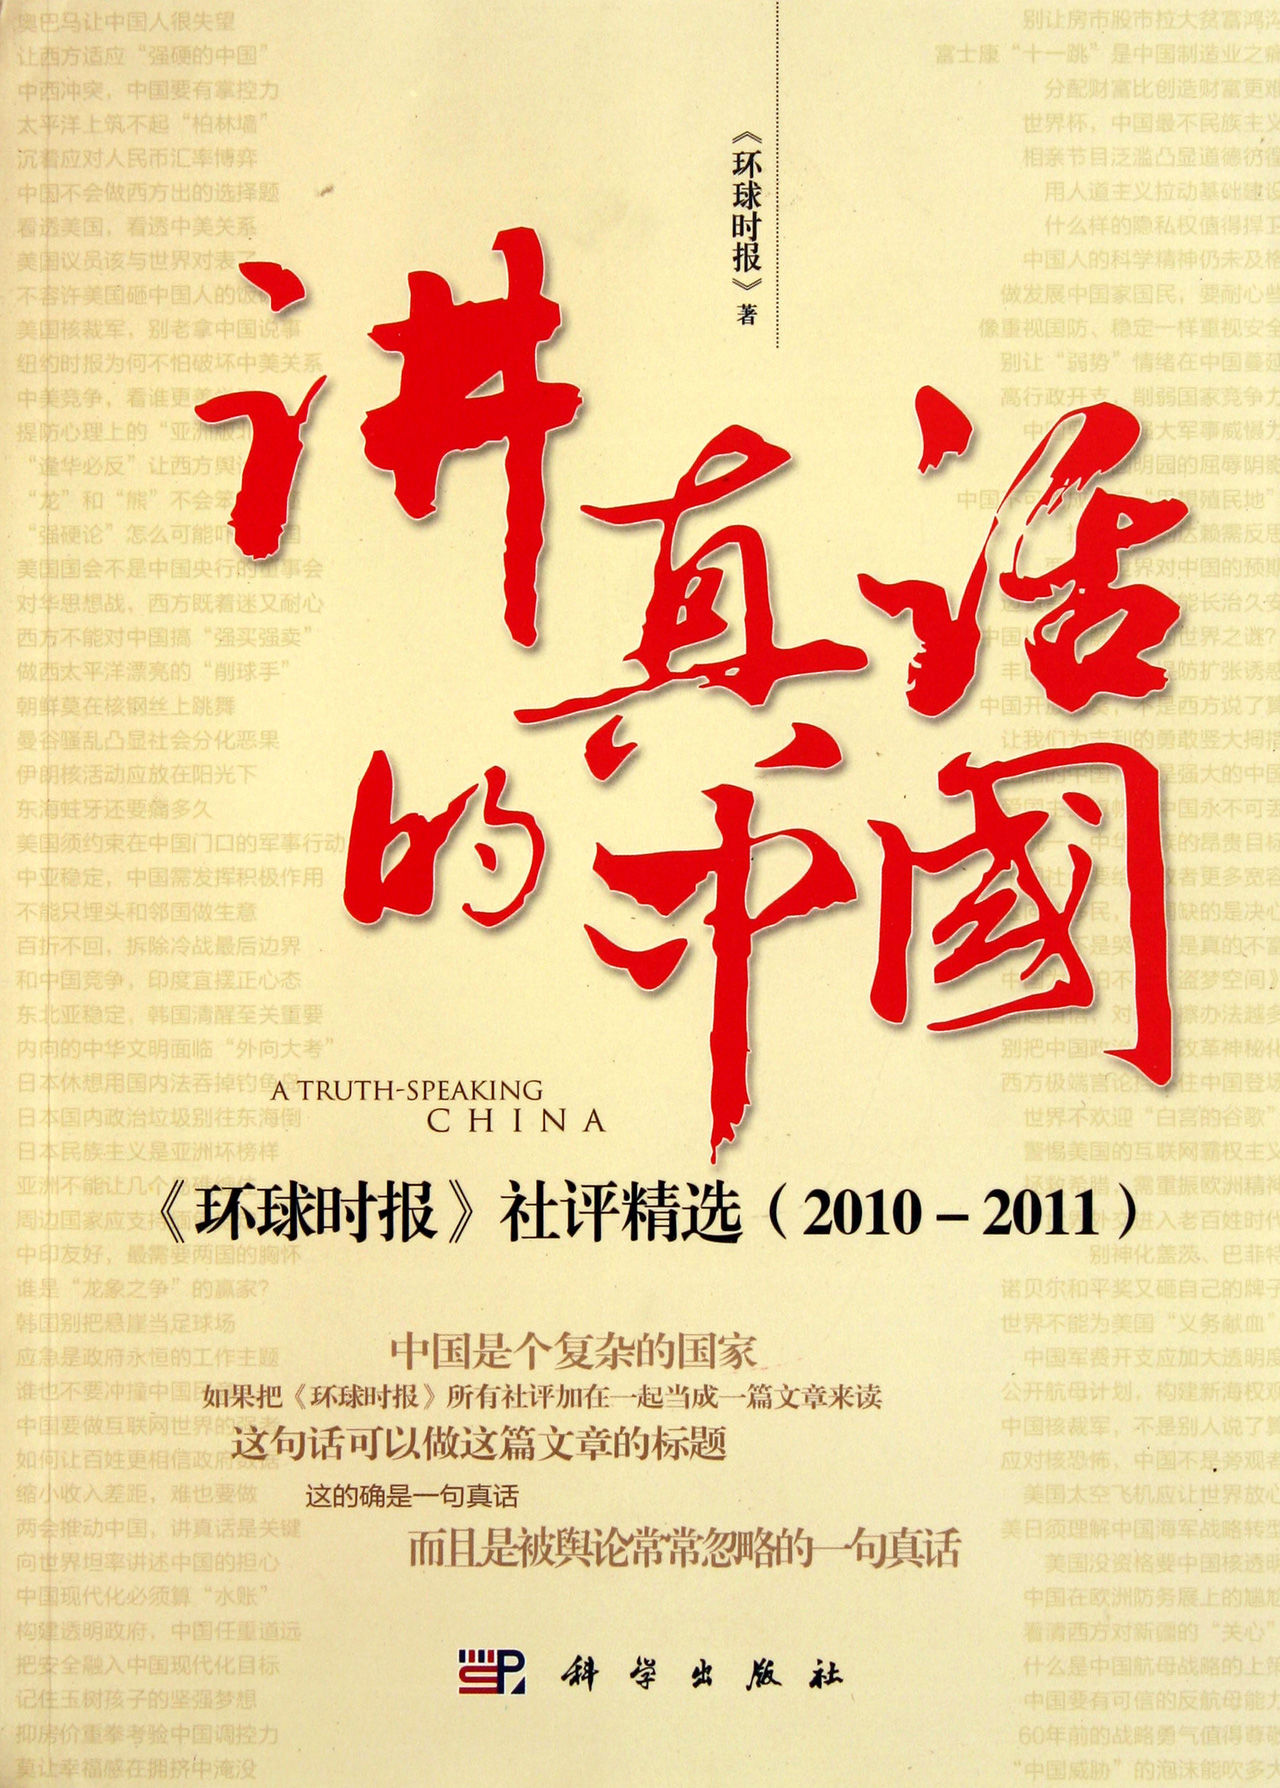 《講真話的中國》——《環球時報》社評精選(2010-2011)